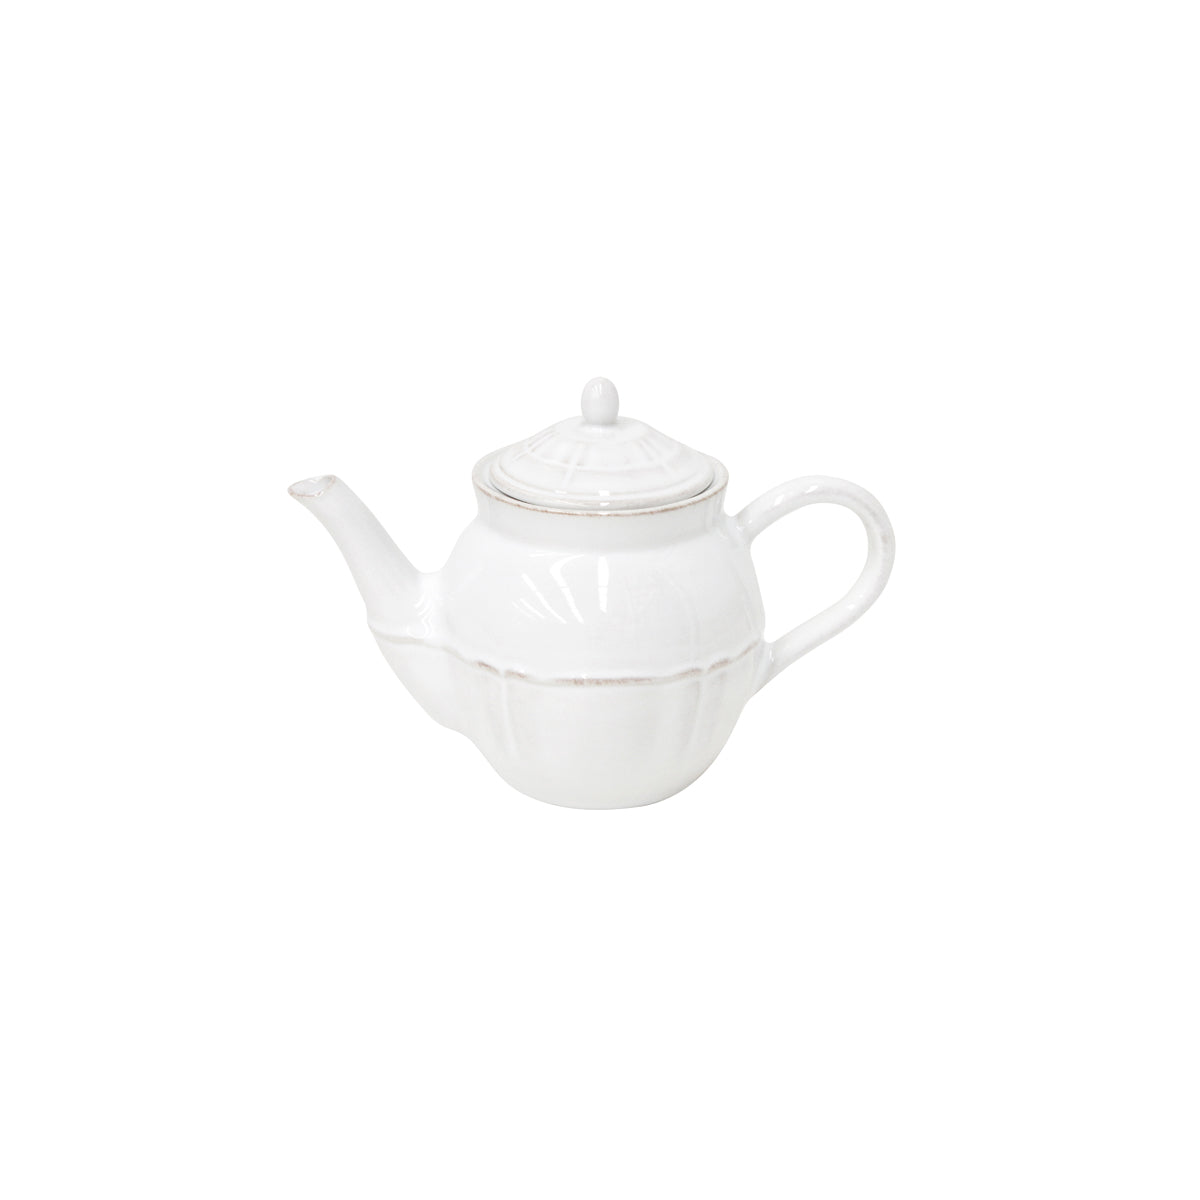 300011 Costa Nova Alentejo White Teapot 510ml Tomkin Australia Hospitality Supplies